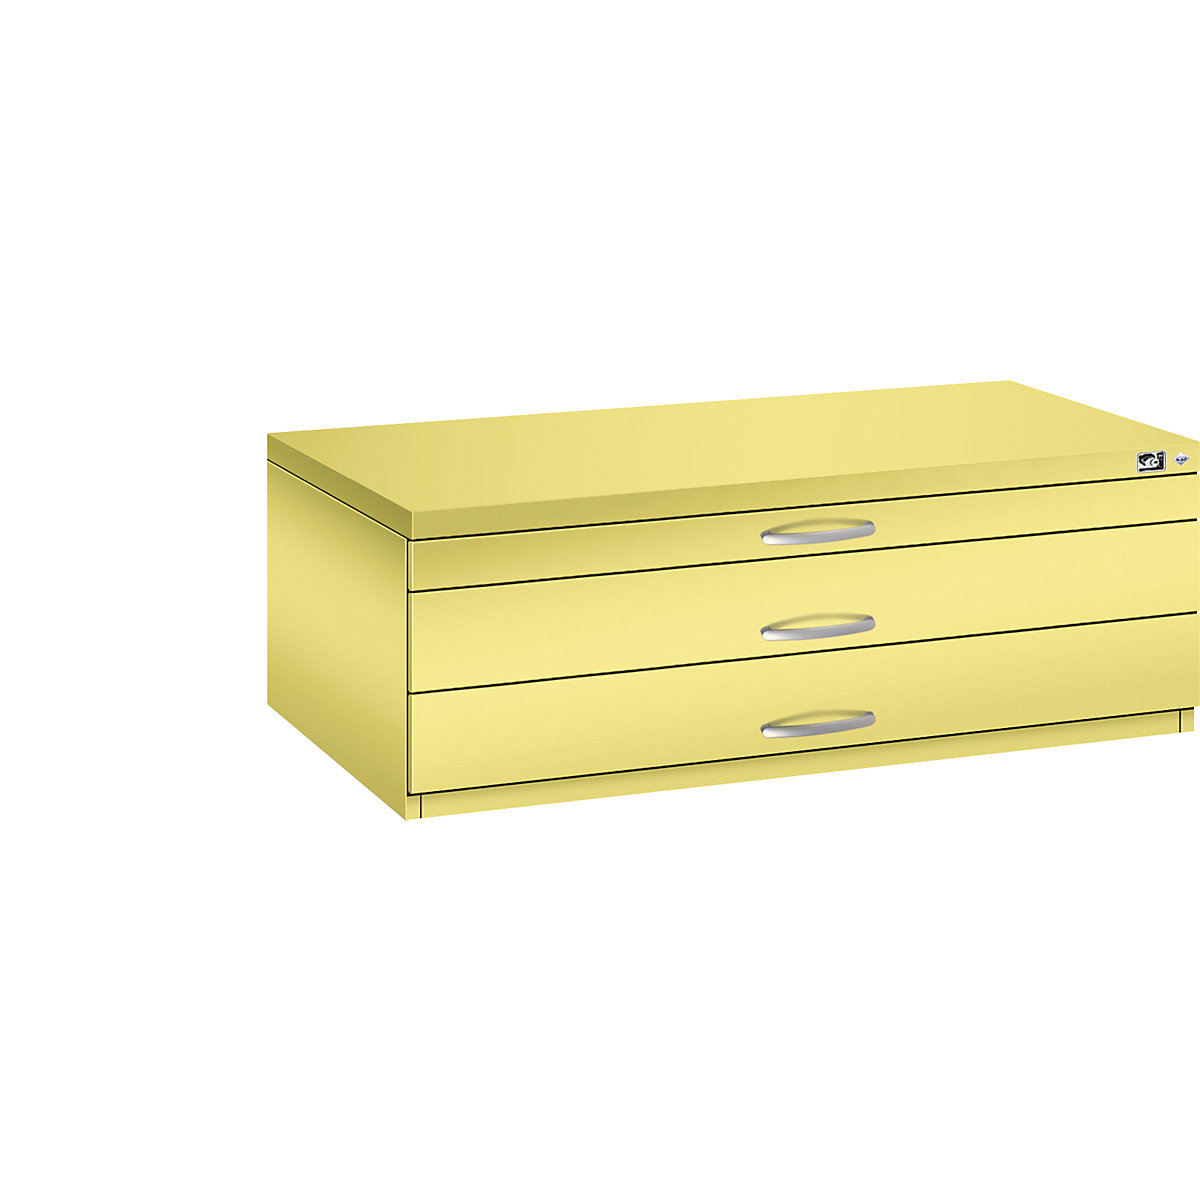 Archivio per disegni – C+P, UNI A1, 3 cassetti, altezza 420 mm, giallo zolfo-17